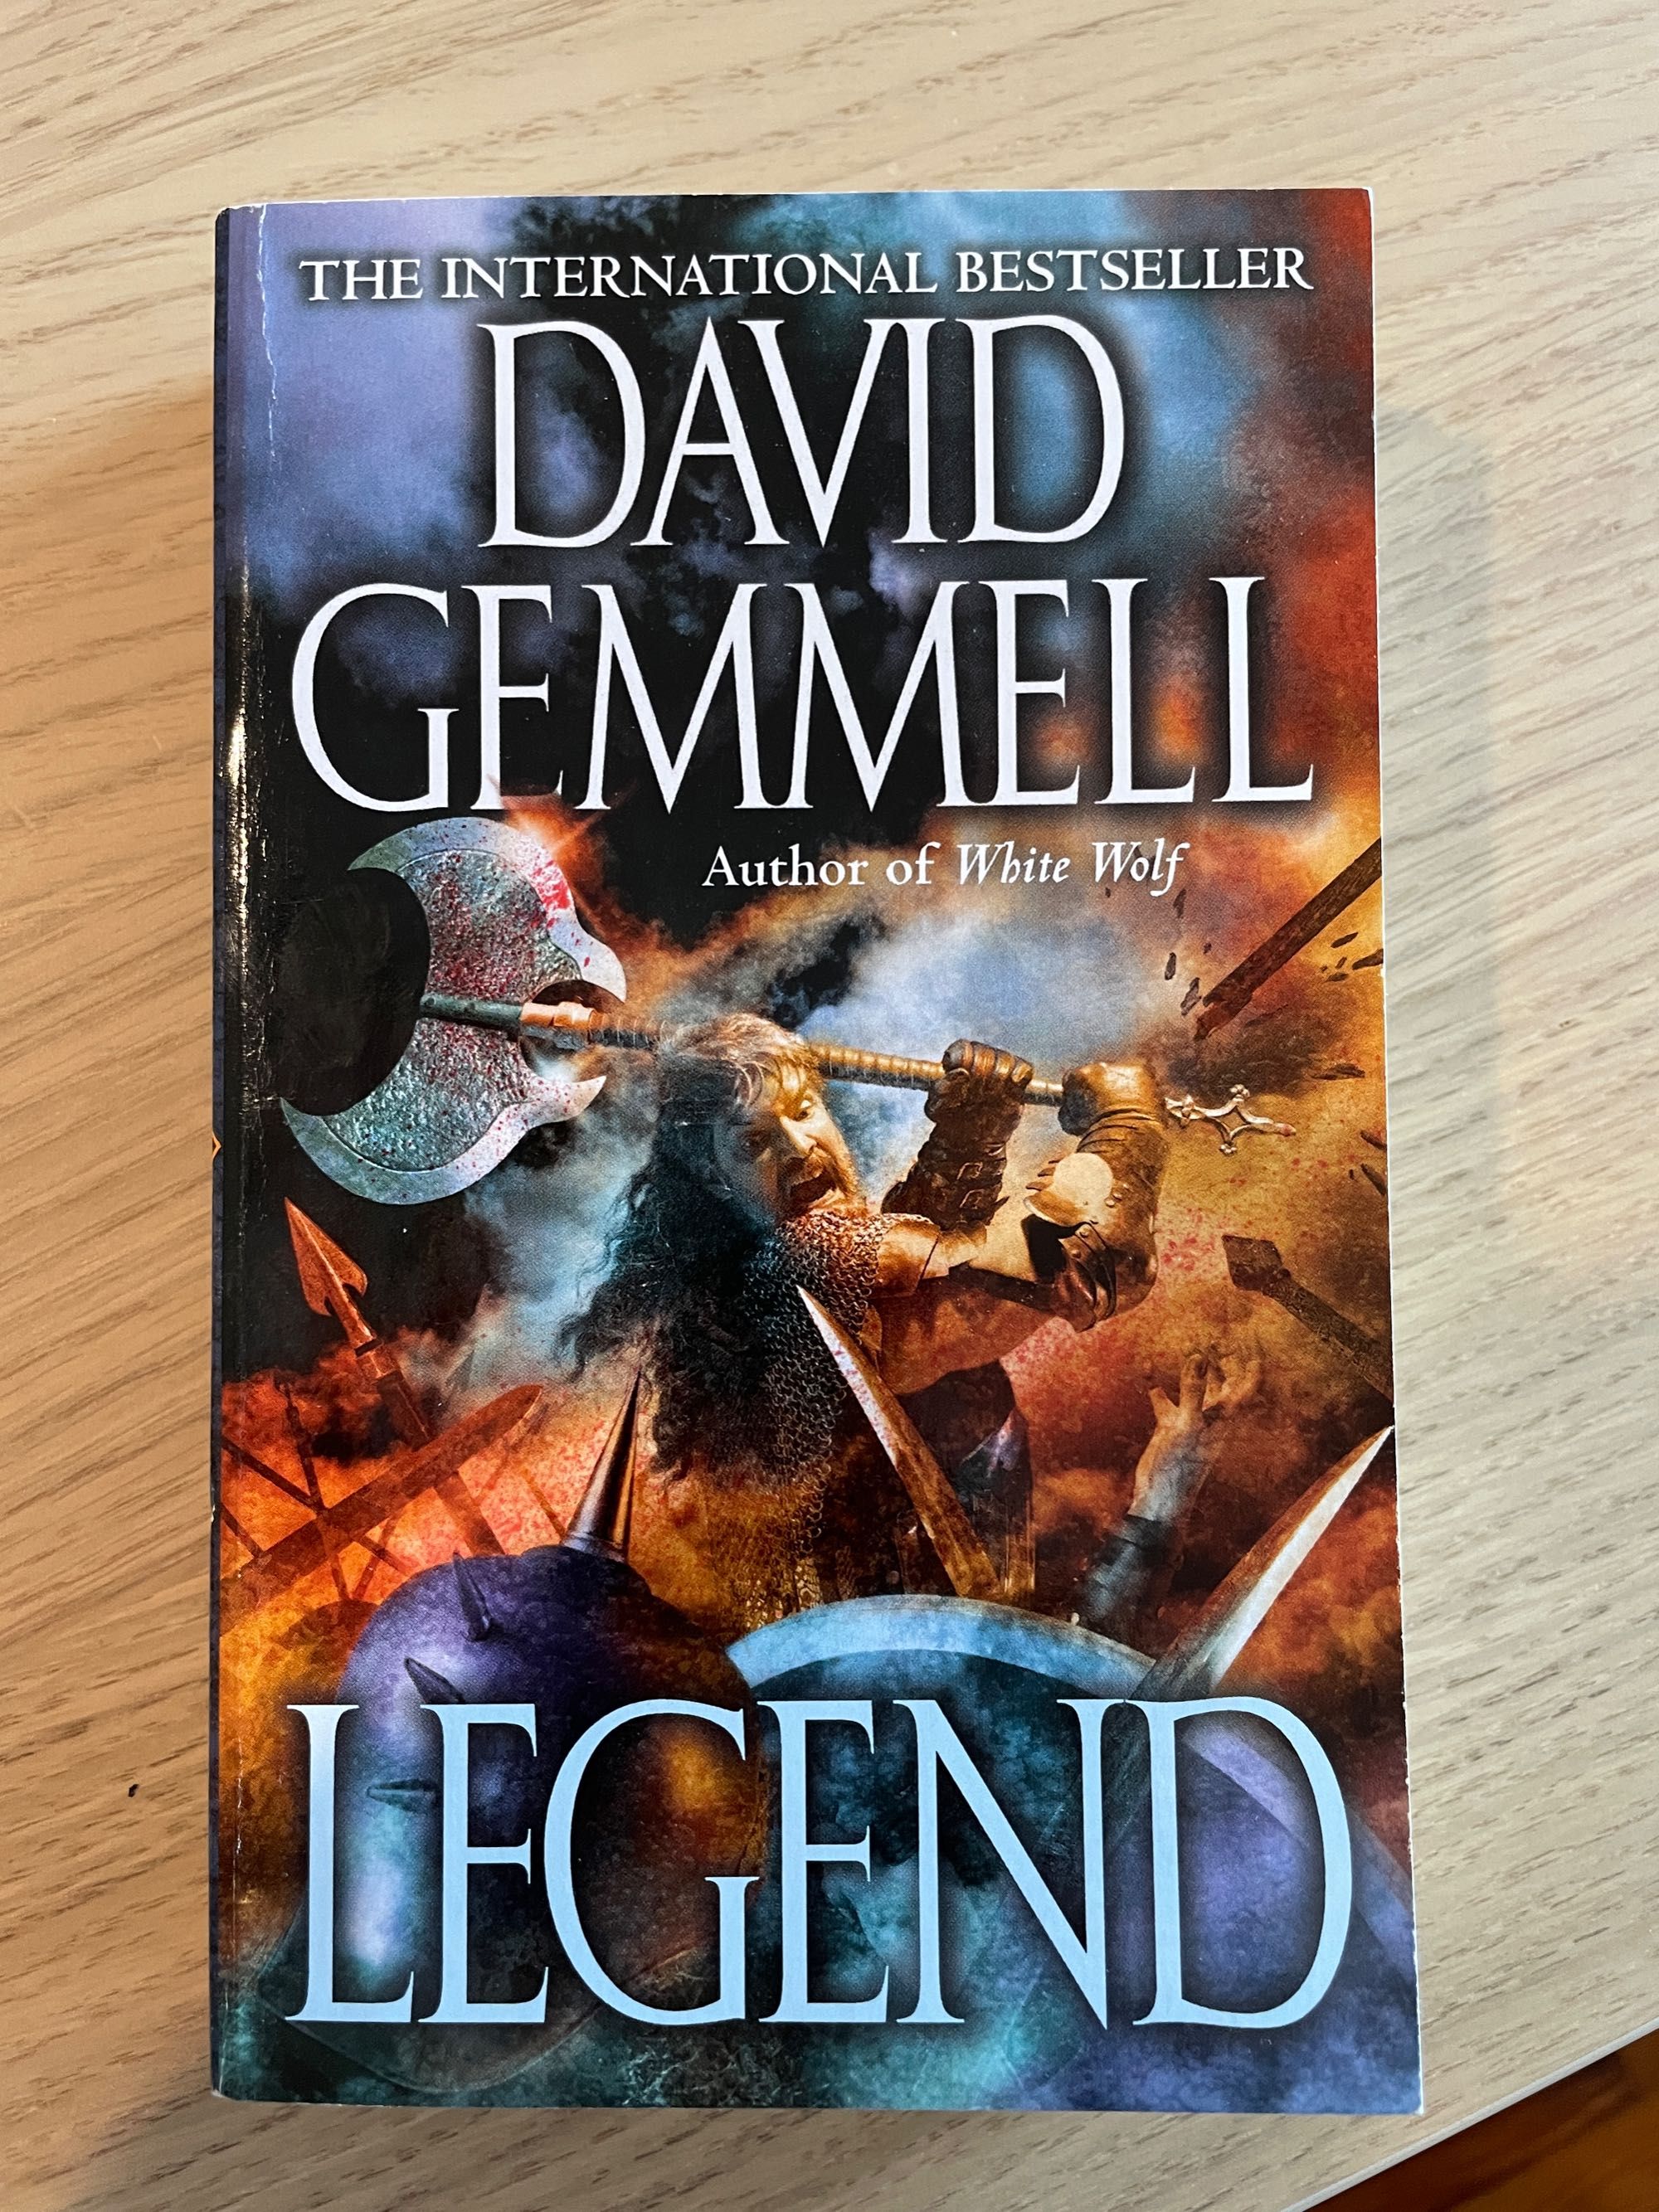 Legend, de David Gemmel (portes incluídos)